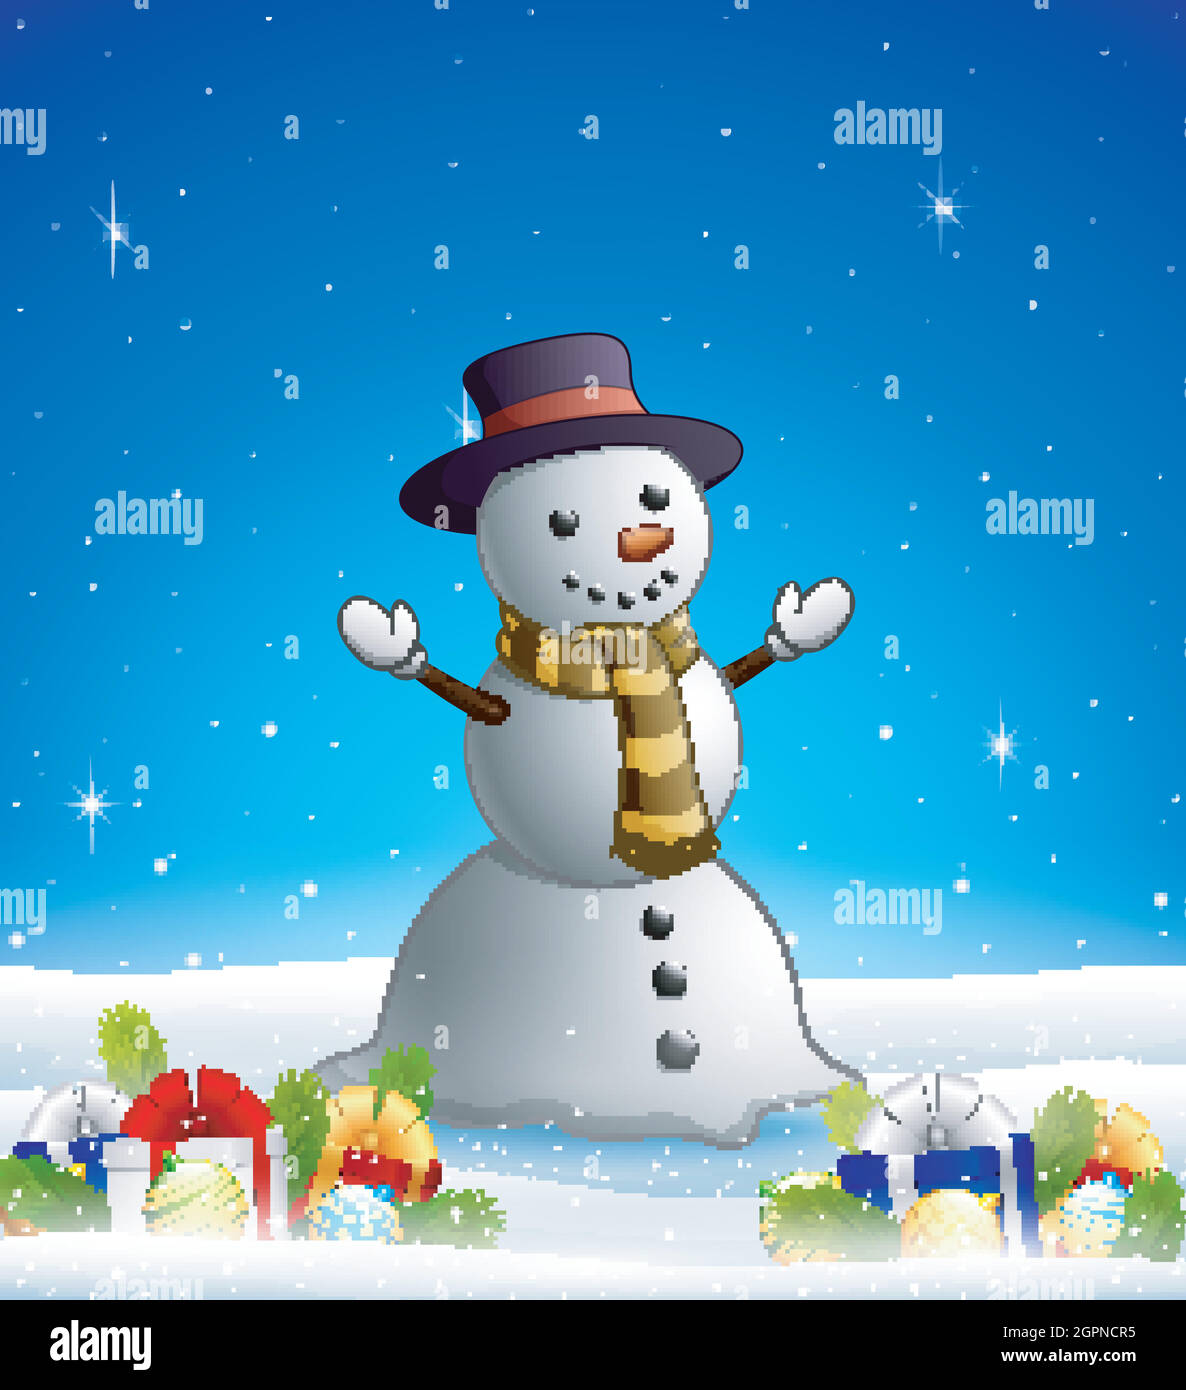 Muñeco de nieve de dibujos animados en el fondo de invierno con cajas de regalo y. bolas Ilustración del Vector